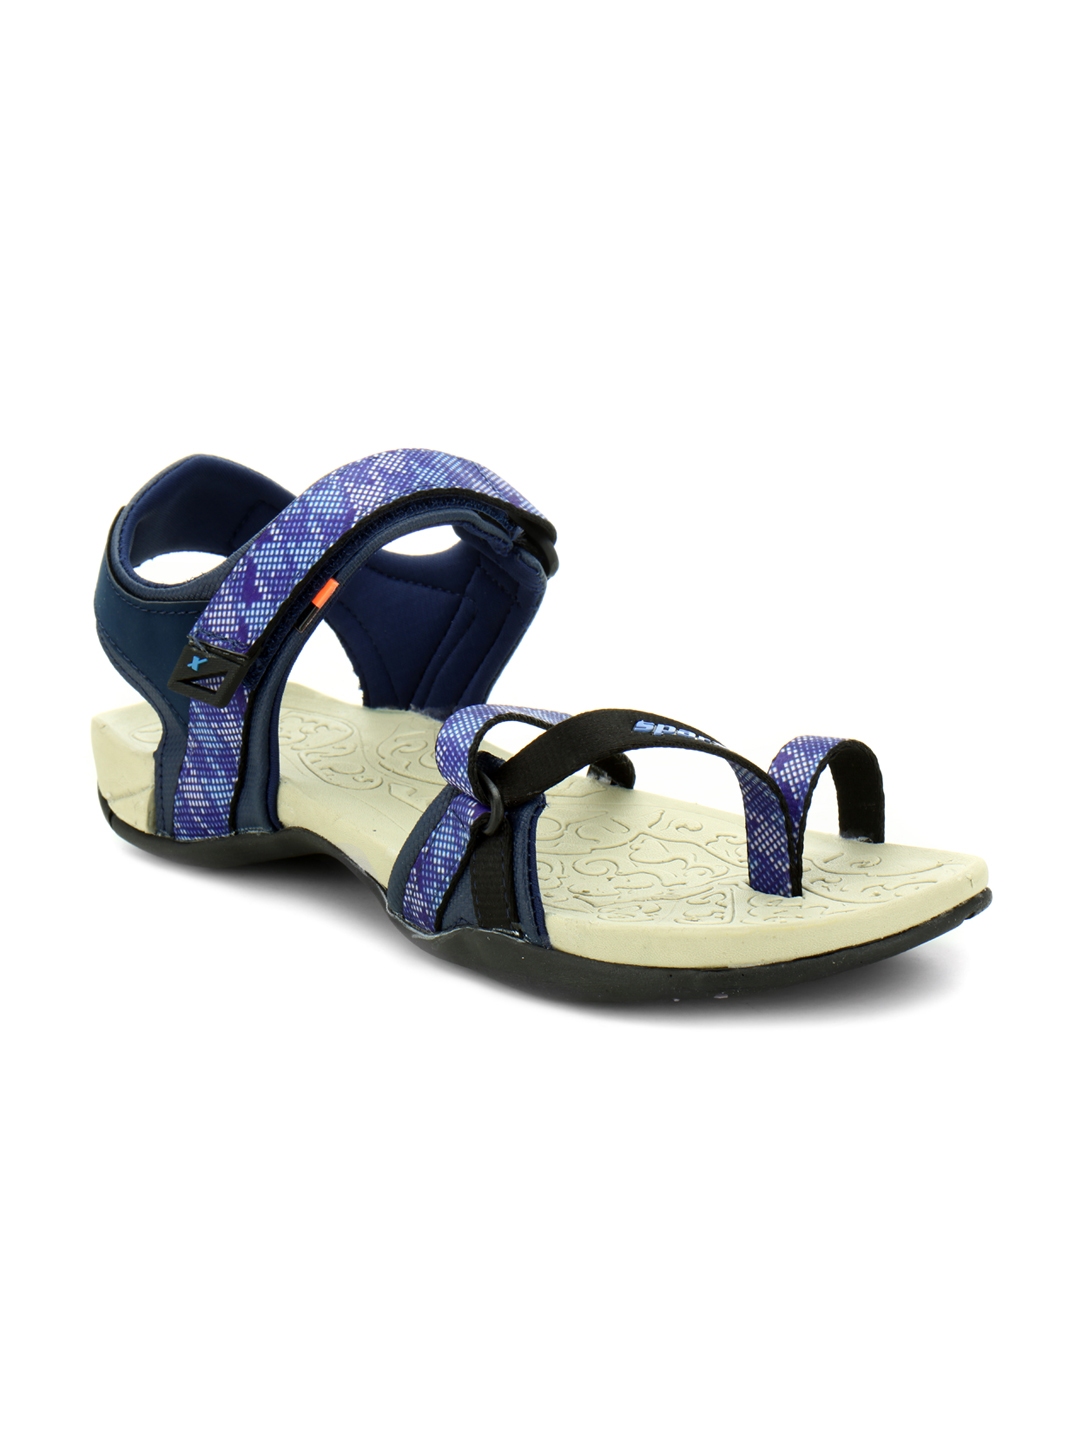 sparx sandal for girl